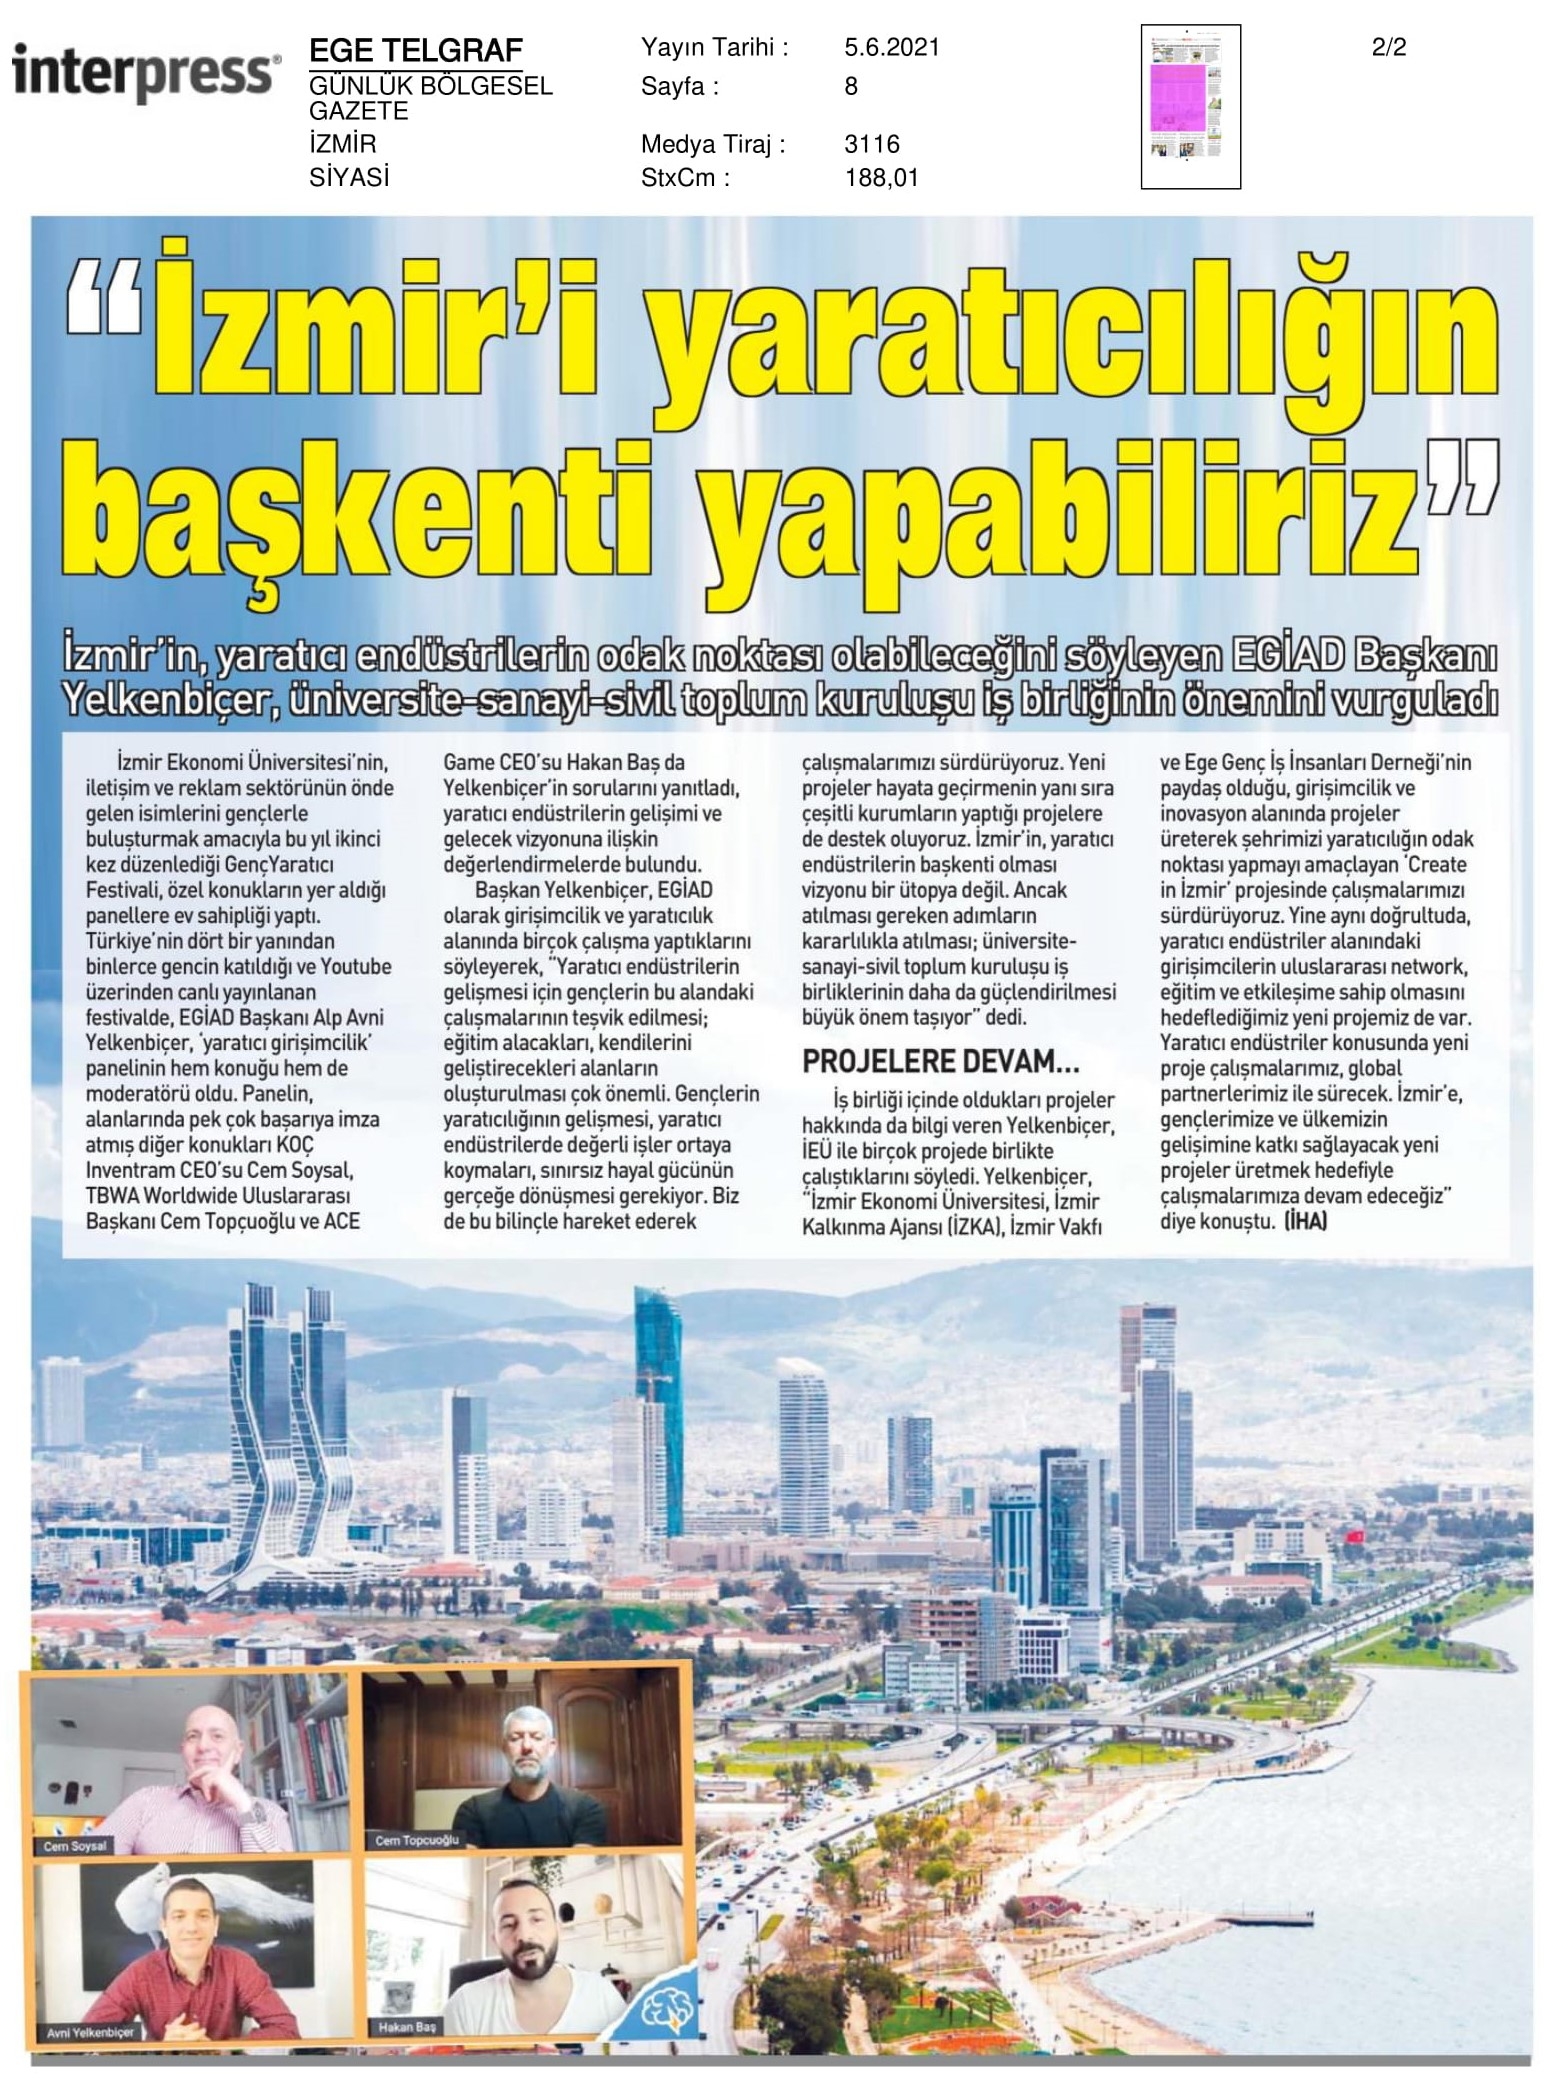 ‘Yaratıcılığın başkenti İzmir’ hedefi hayal değil